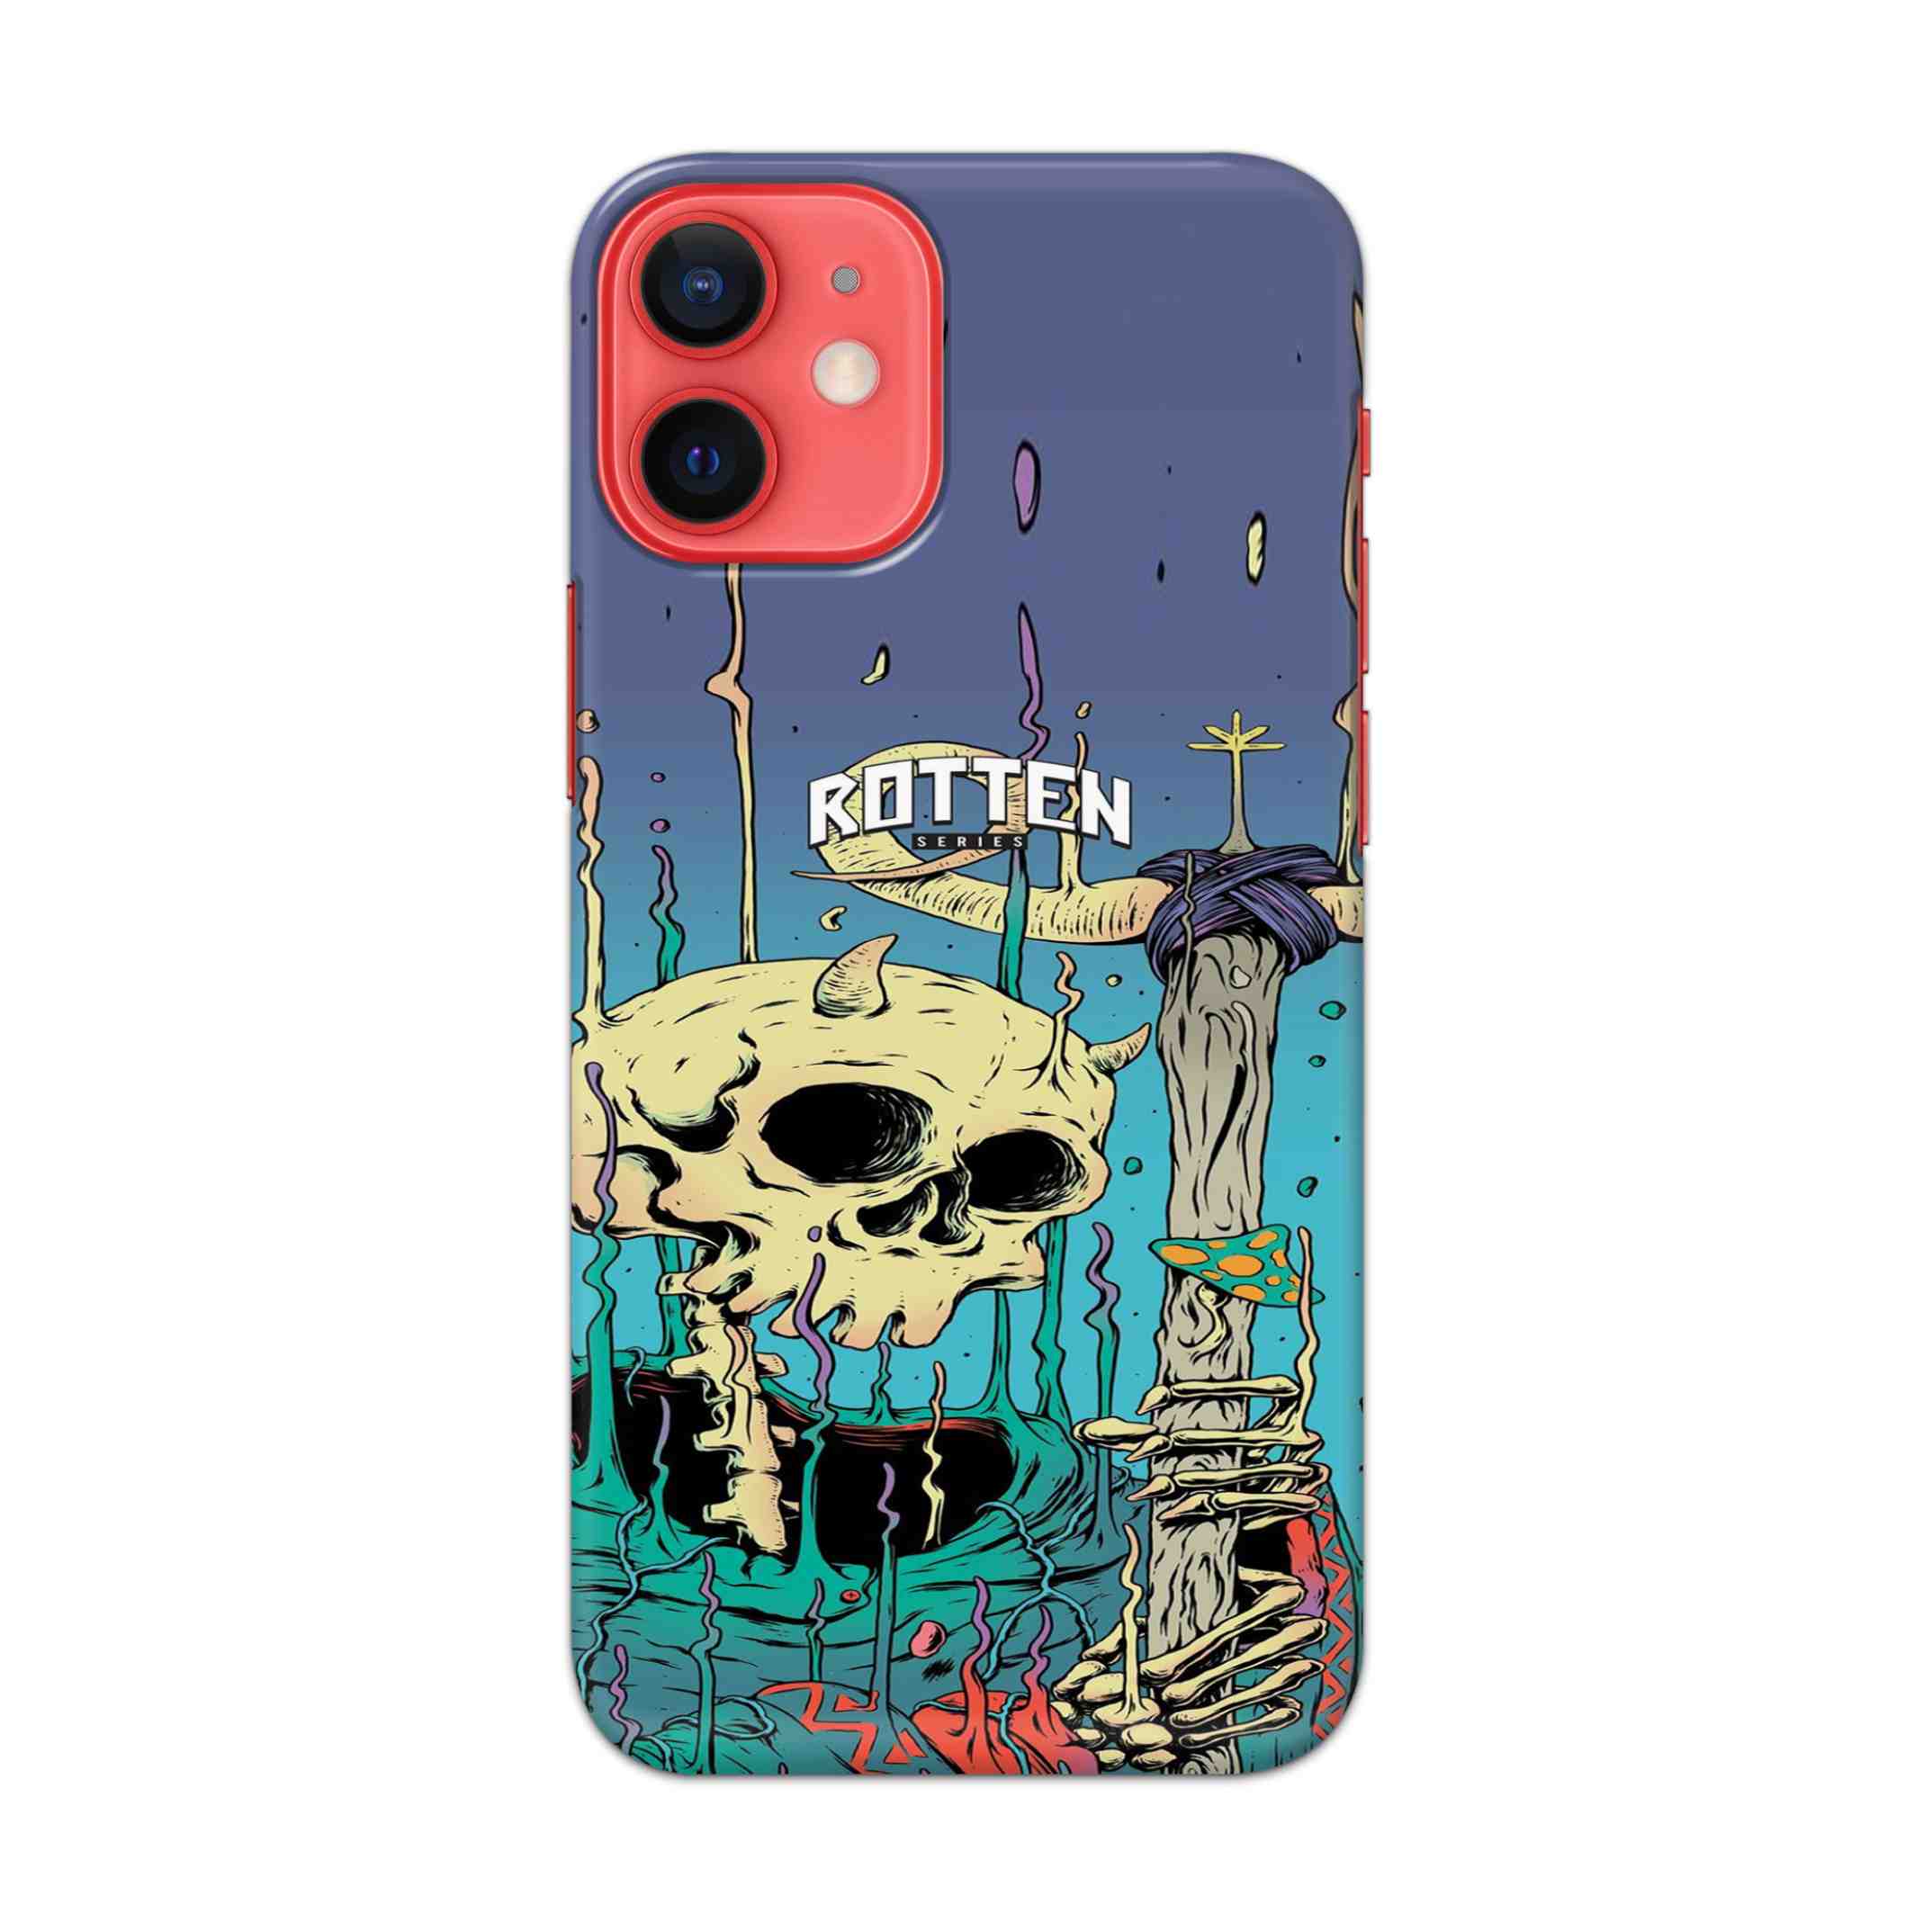 Buy Skull Hard Back Mobile Phone Case/Cover For Apple iPhone 12 mini Online